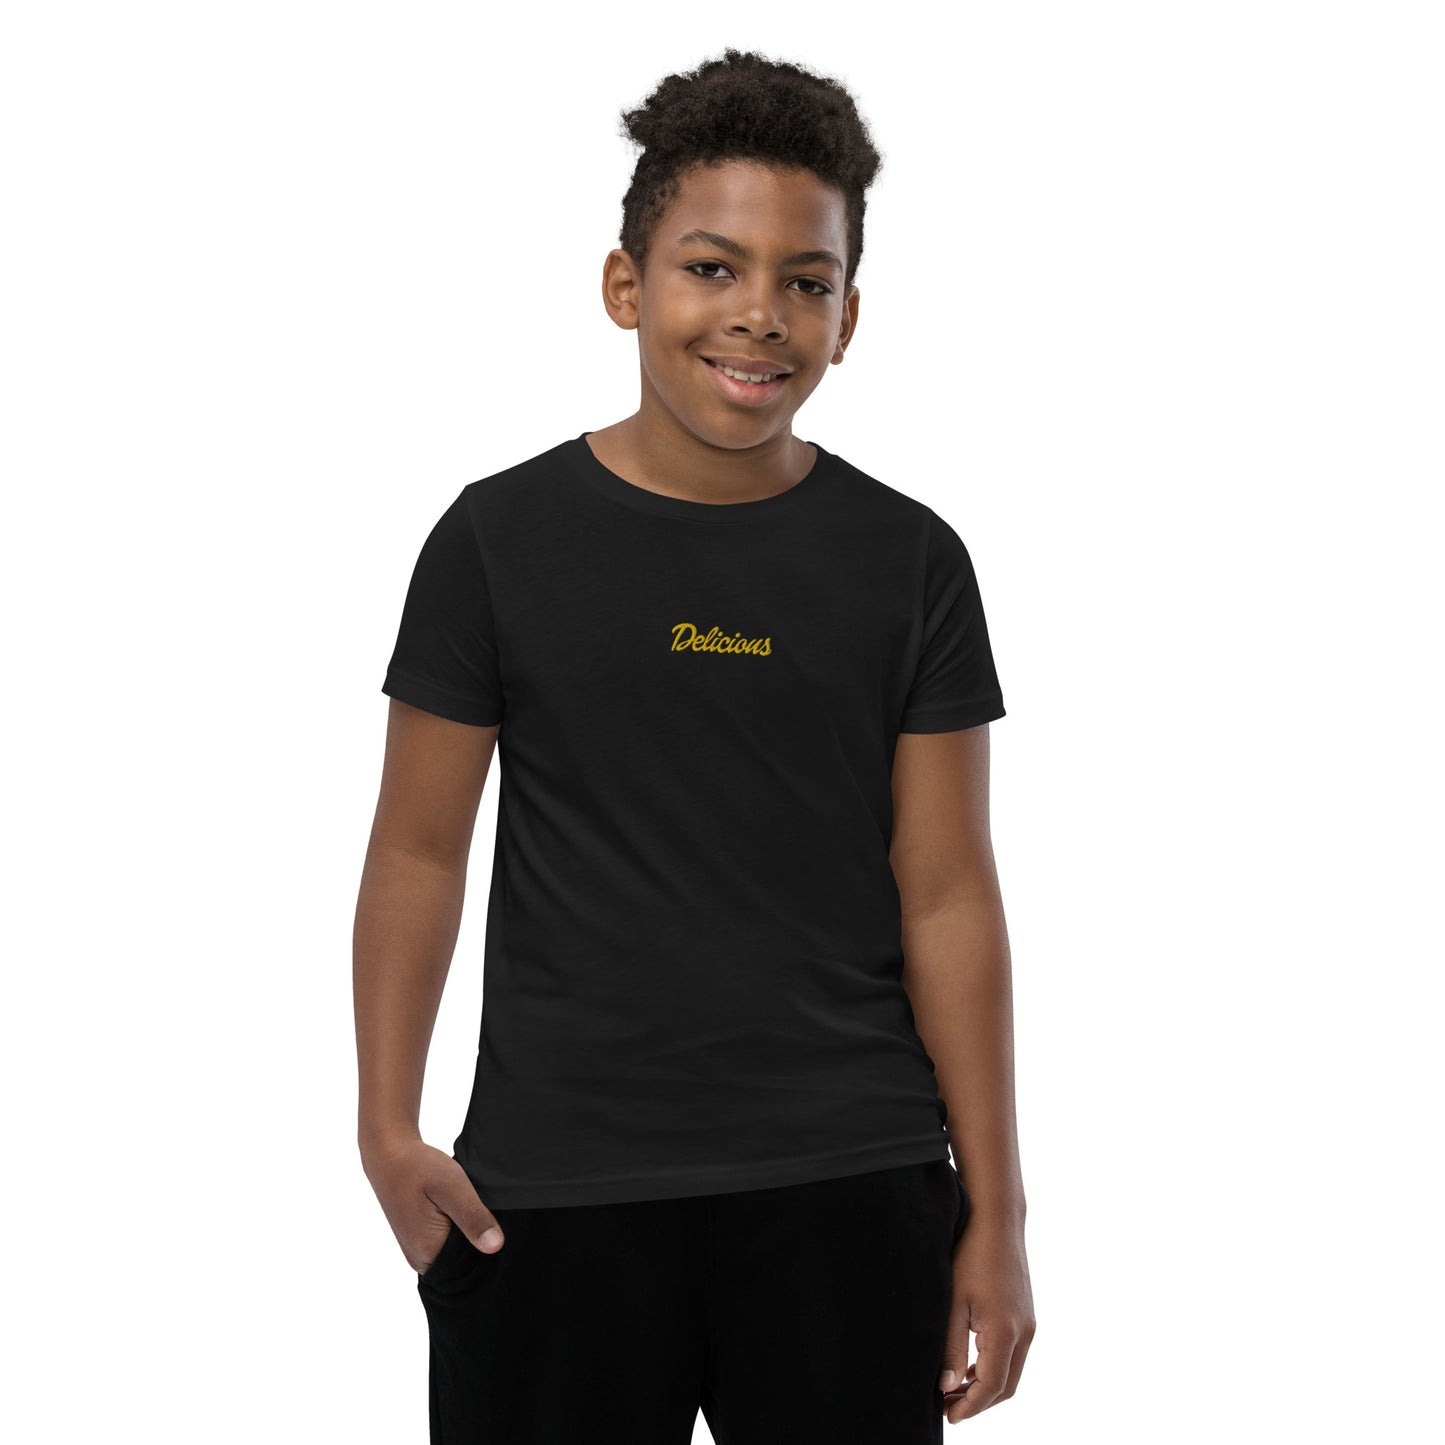 Delicious junior t-shirt - unisex